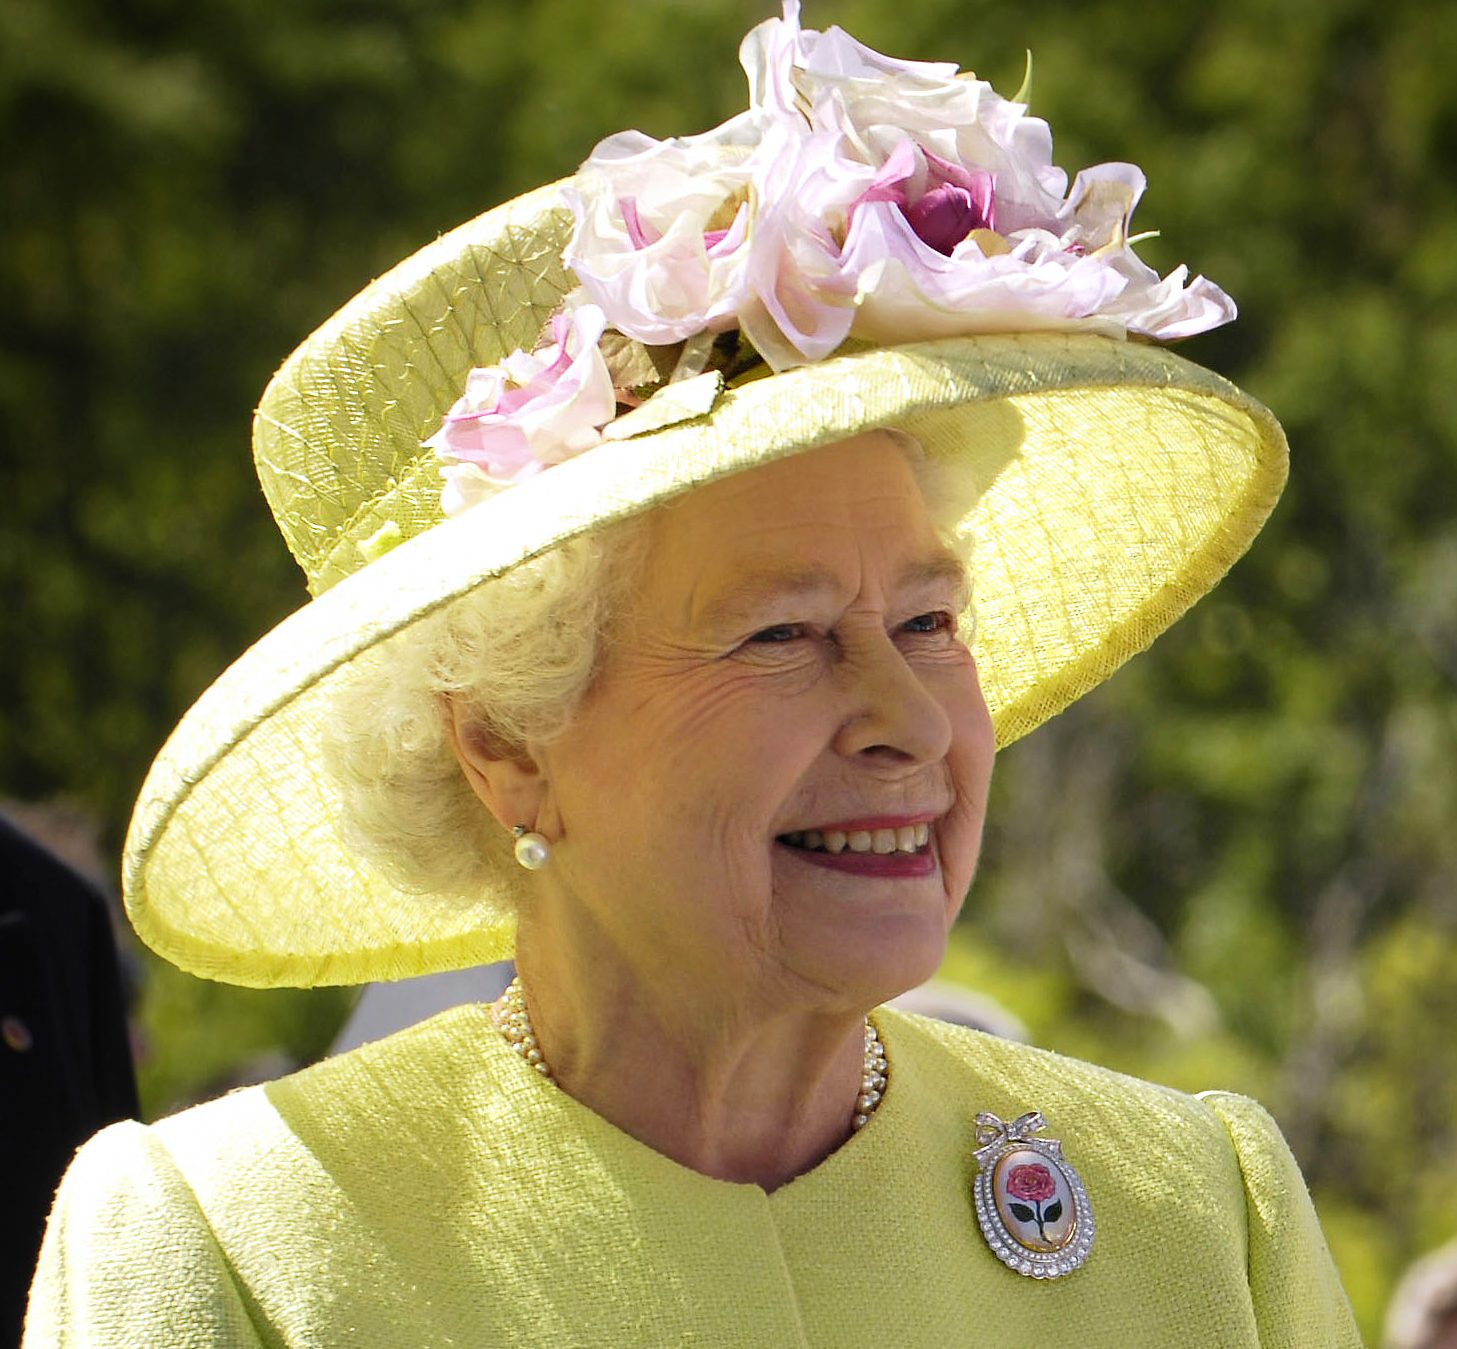 Queen Elizabeth II’s funeral to be held Monday, September 19